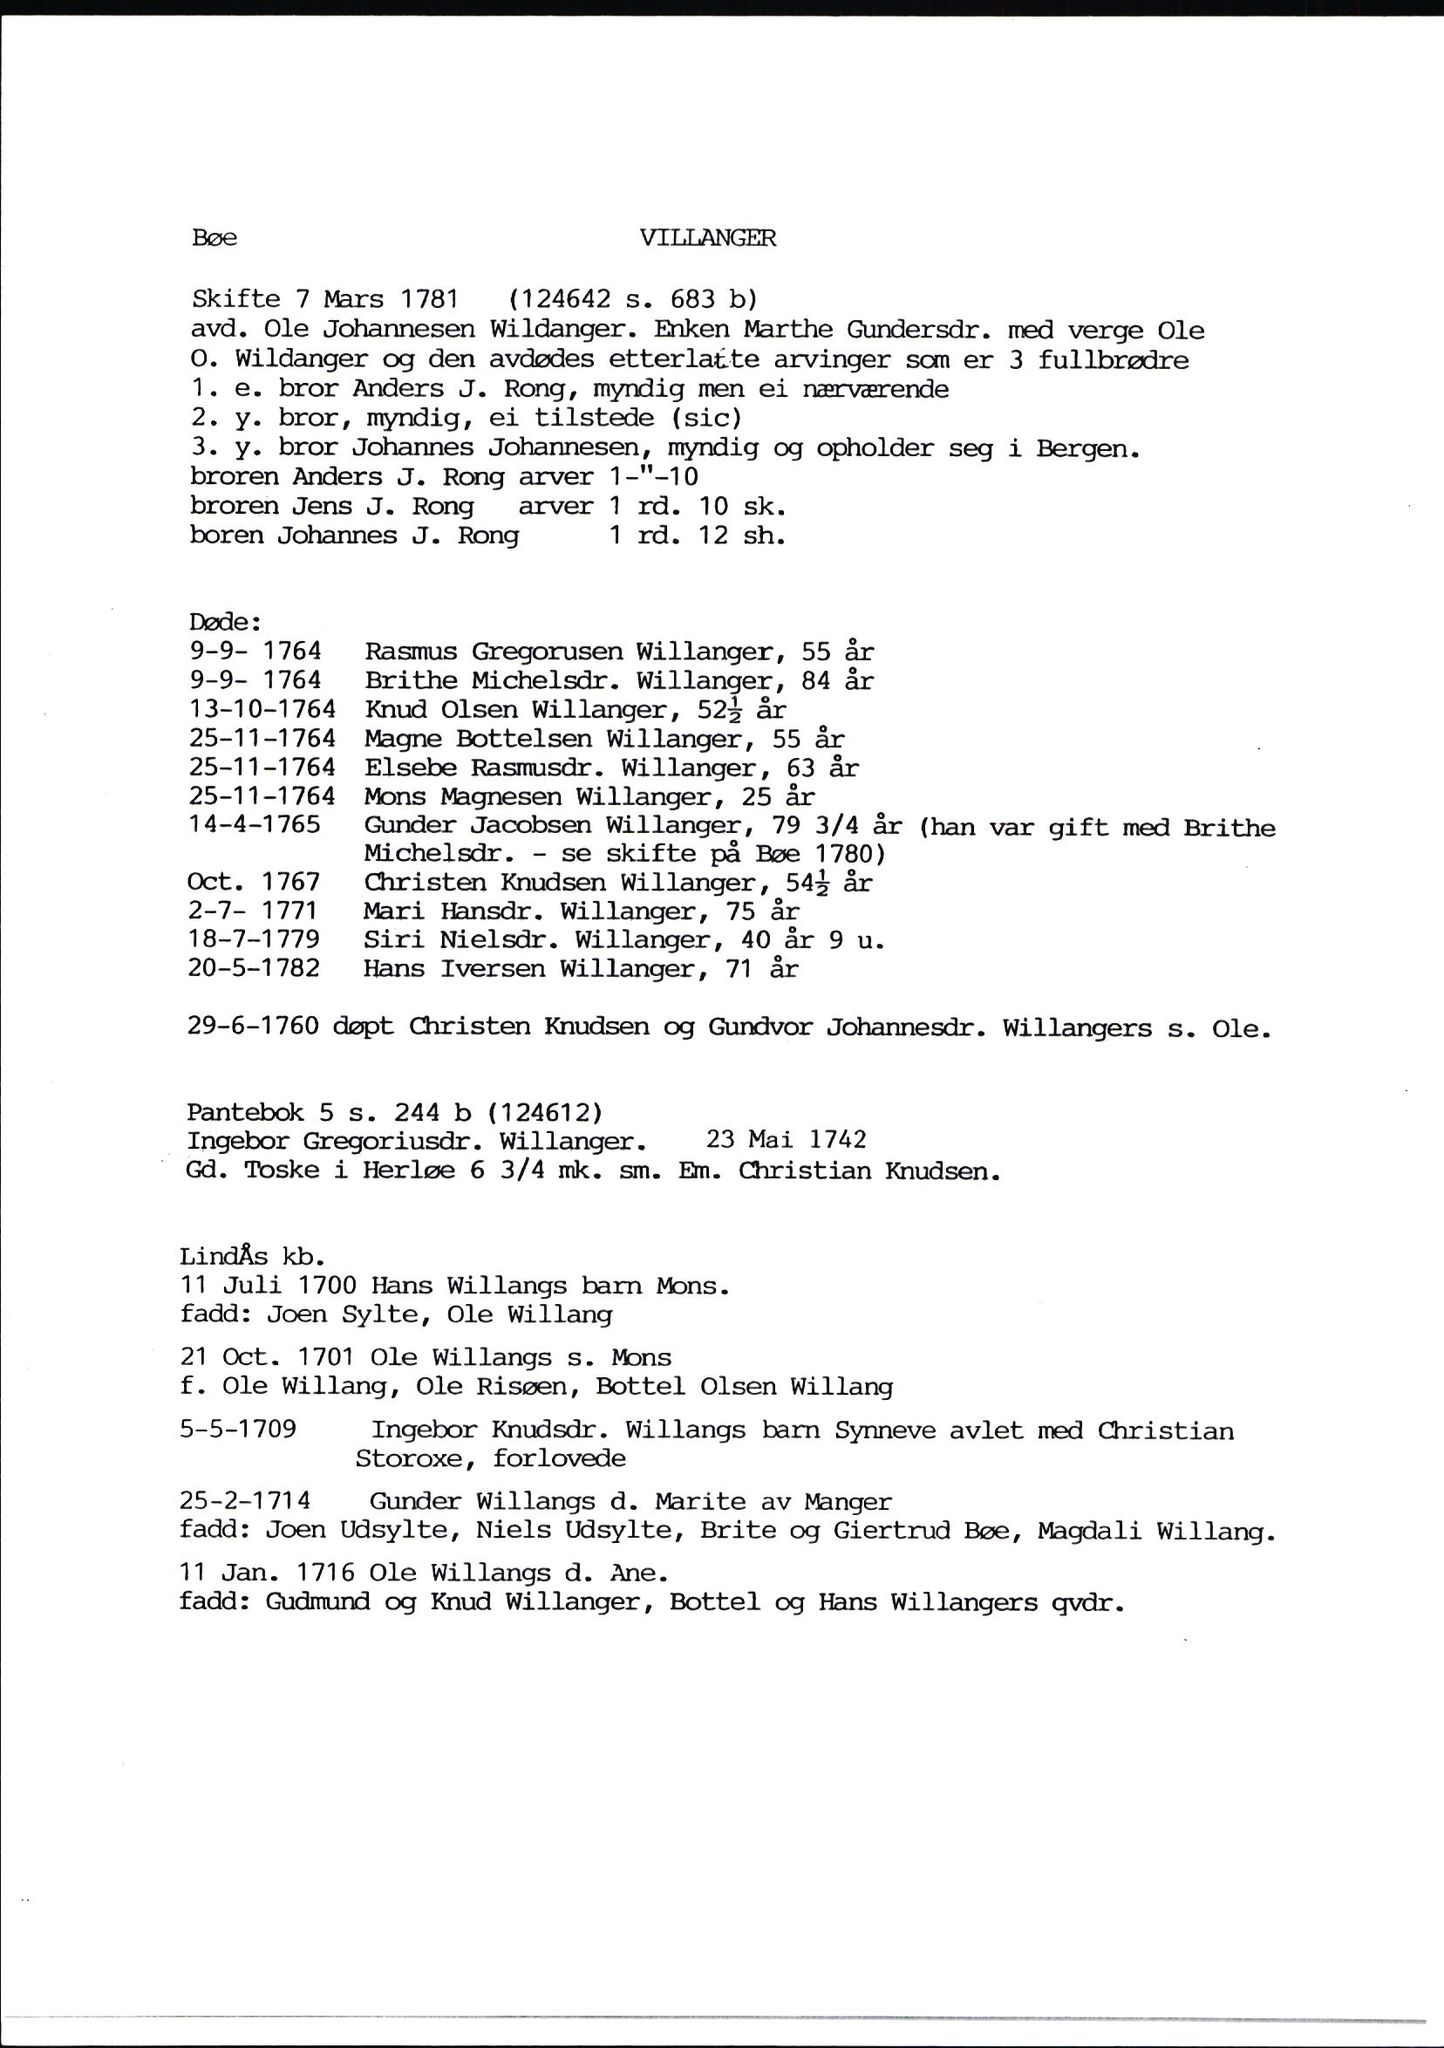 Samling av fulltekstavskrifter, SAB/FULLTEKST/D/12/0001: Skifter og andre opplysninger fra gårder i Manger prestegjeld (soknene Herdla, Bø, Sæbø og Manger) ca. 1700 - ca. 1800, 1700-1800, s. 138